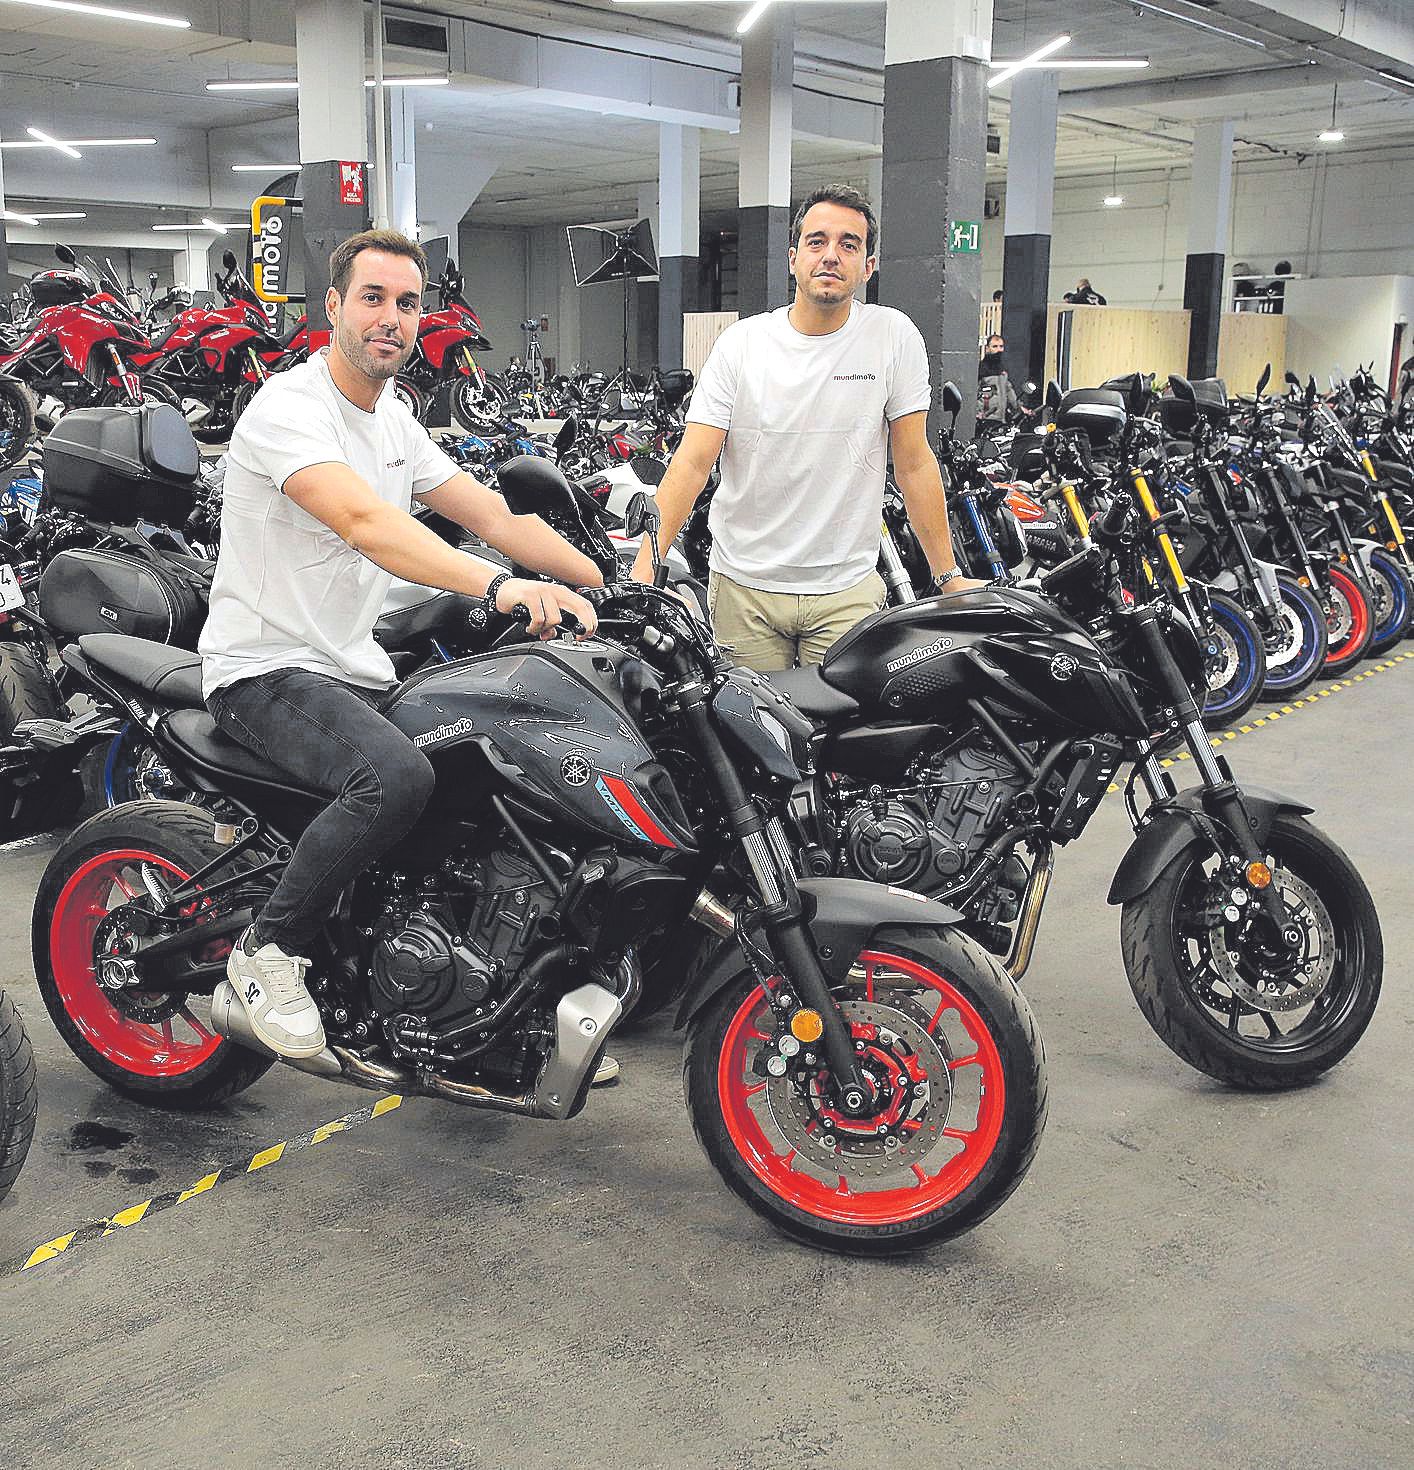 Mundimoto es un ‘e-commerce’ de motos que facturó un millón de euros en 2019 y que aspira ya a los 150 millones